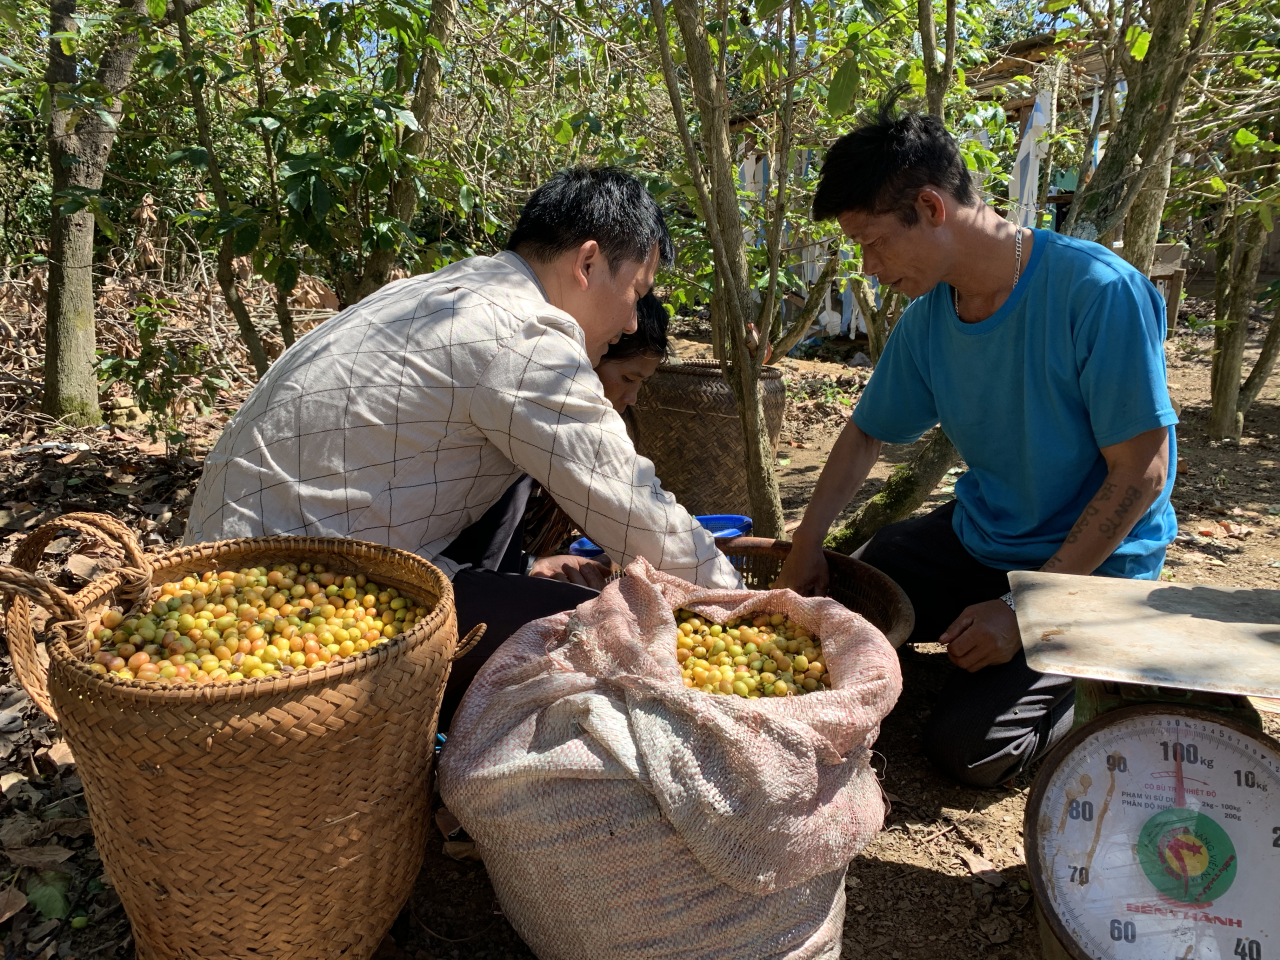 Khám phá các dòng hạt cà phê Arabica chất lượng ở Việt Nam